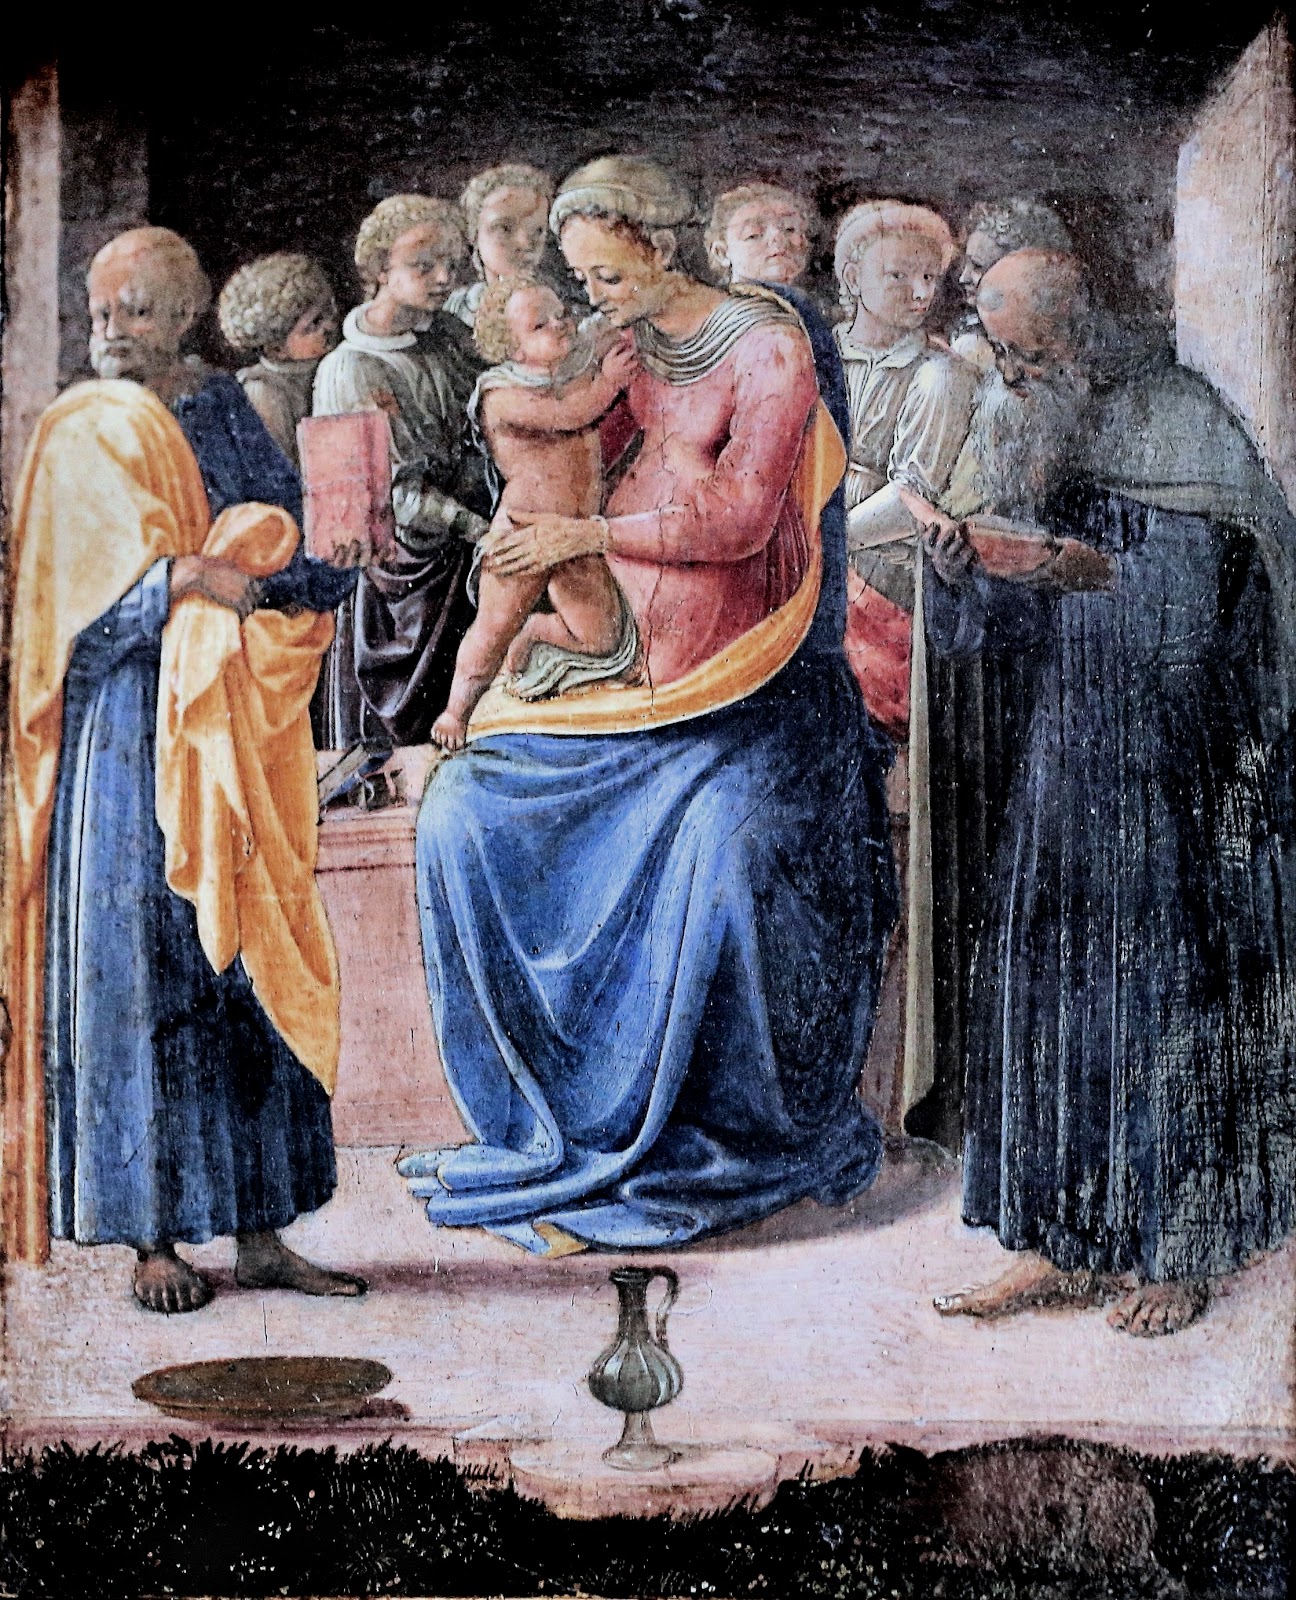 Filippino+Lippi-1457-1504 (126).jpg